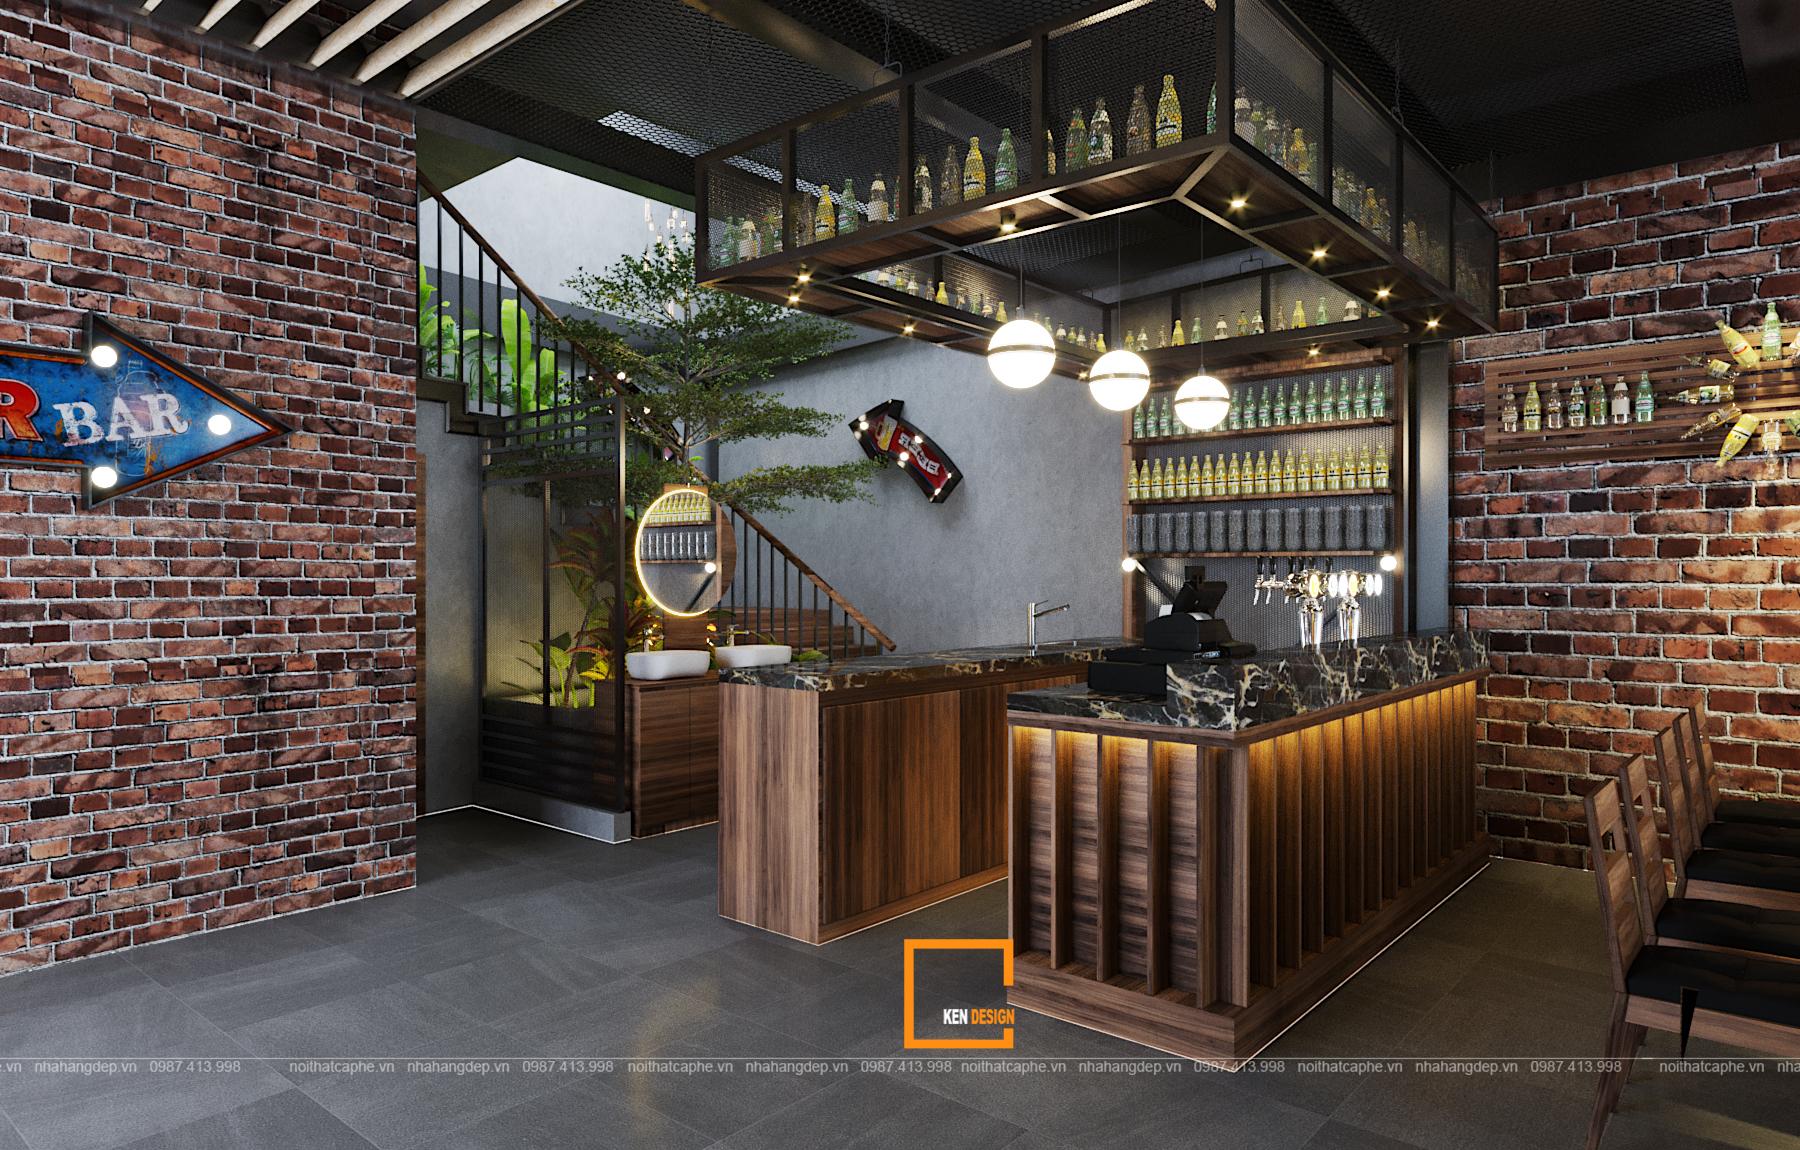 10870a997f23997dc032 1 1 1 - Thiết kế nhà hàng Sapphire - sự kết hợp hoàn hảo giữa phong cách Industrial và Rustic